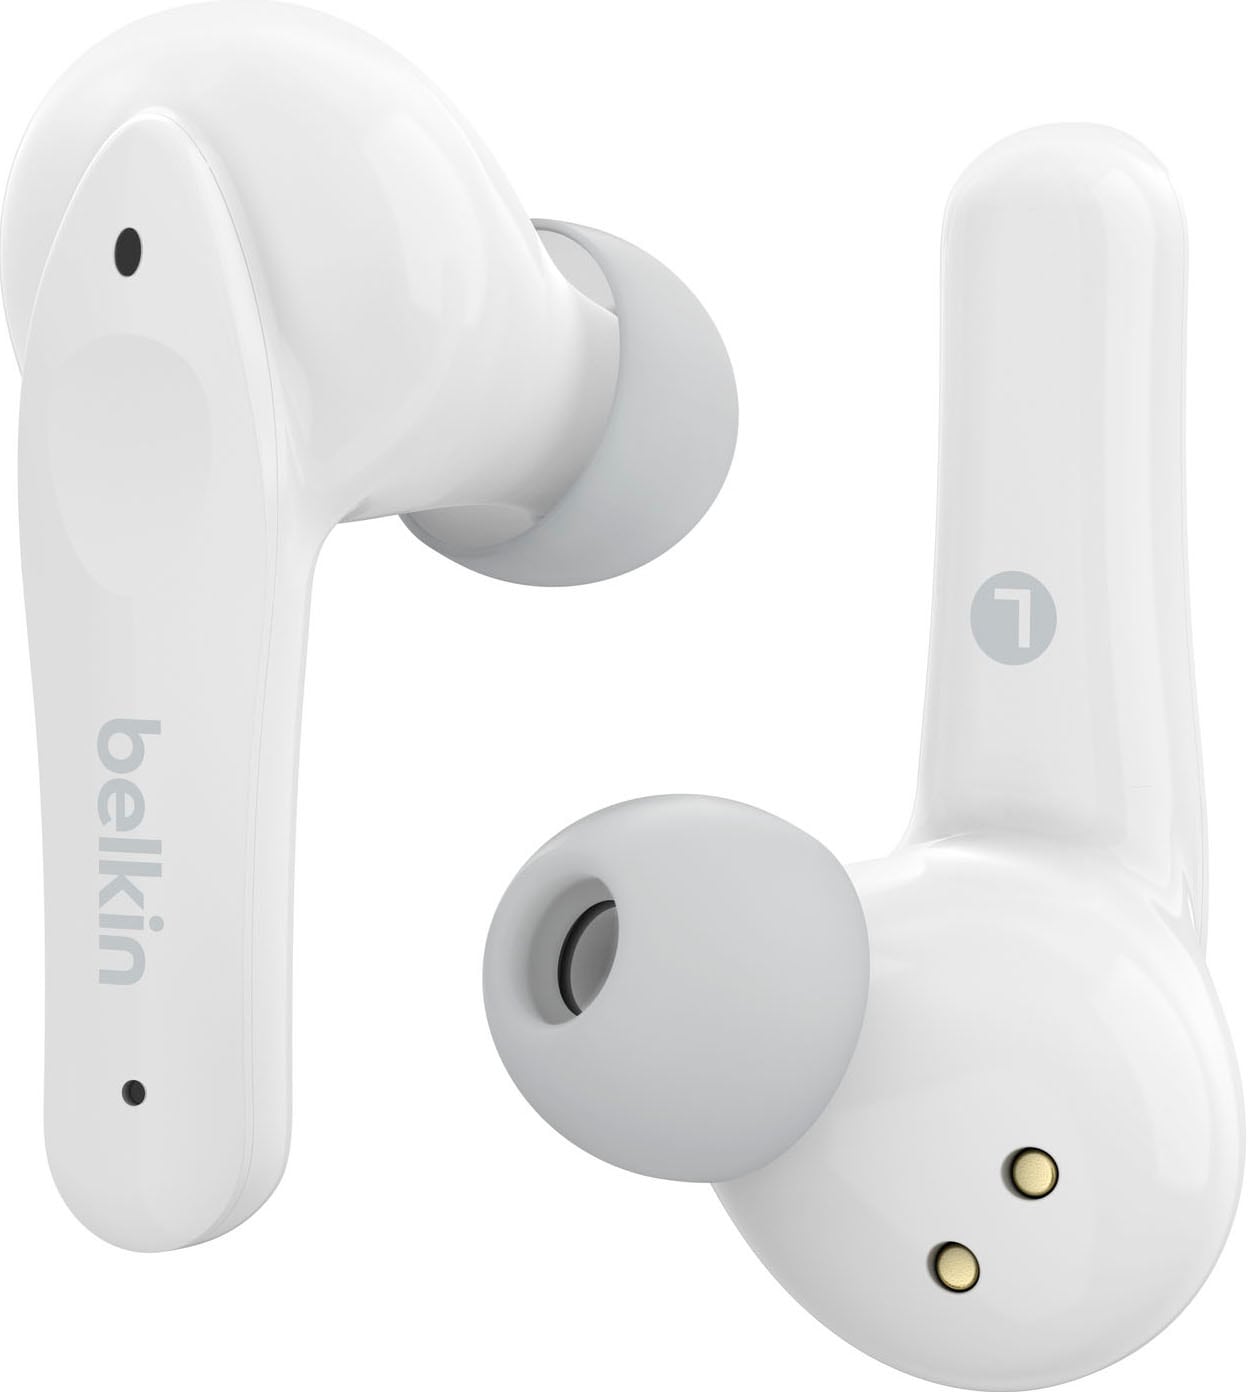 Belkin wireless Kopfhörer Kopfhörer Kinder In-Ear-Kopfhörer«, 85 NANO jetzt bei - auf OTTO bestellen begrenzt; »SOUNDFORM am dB